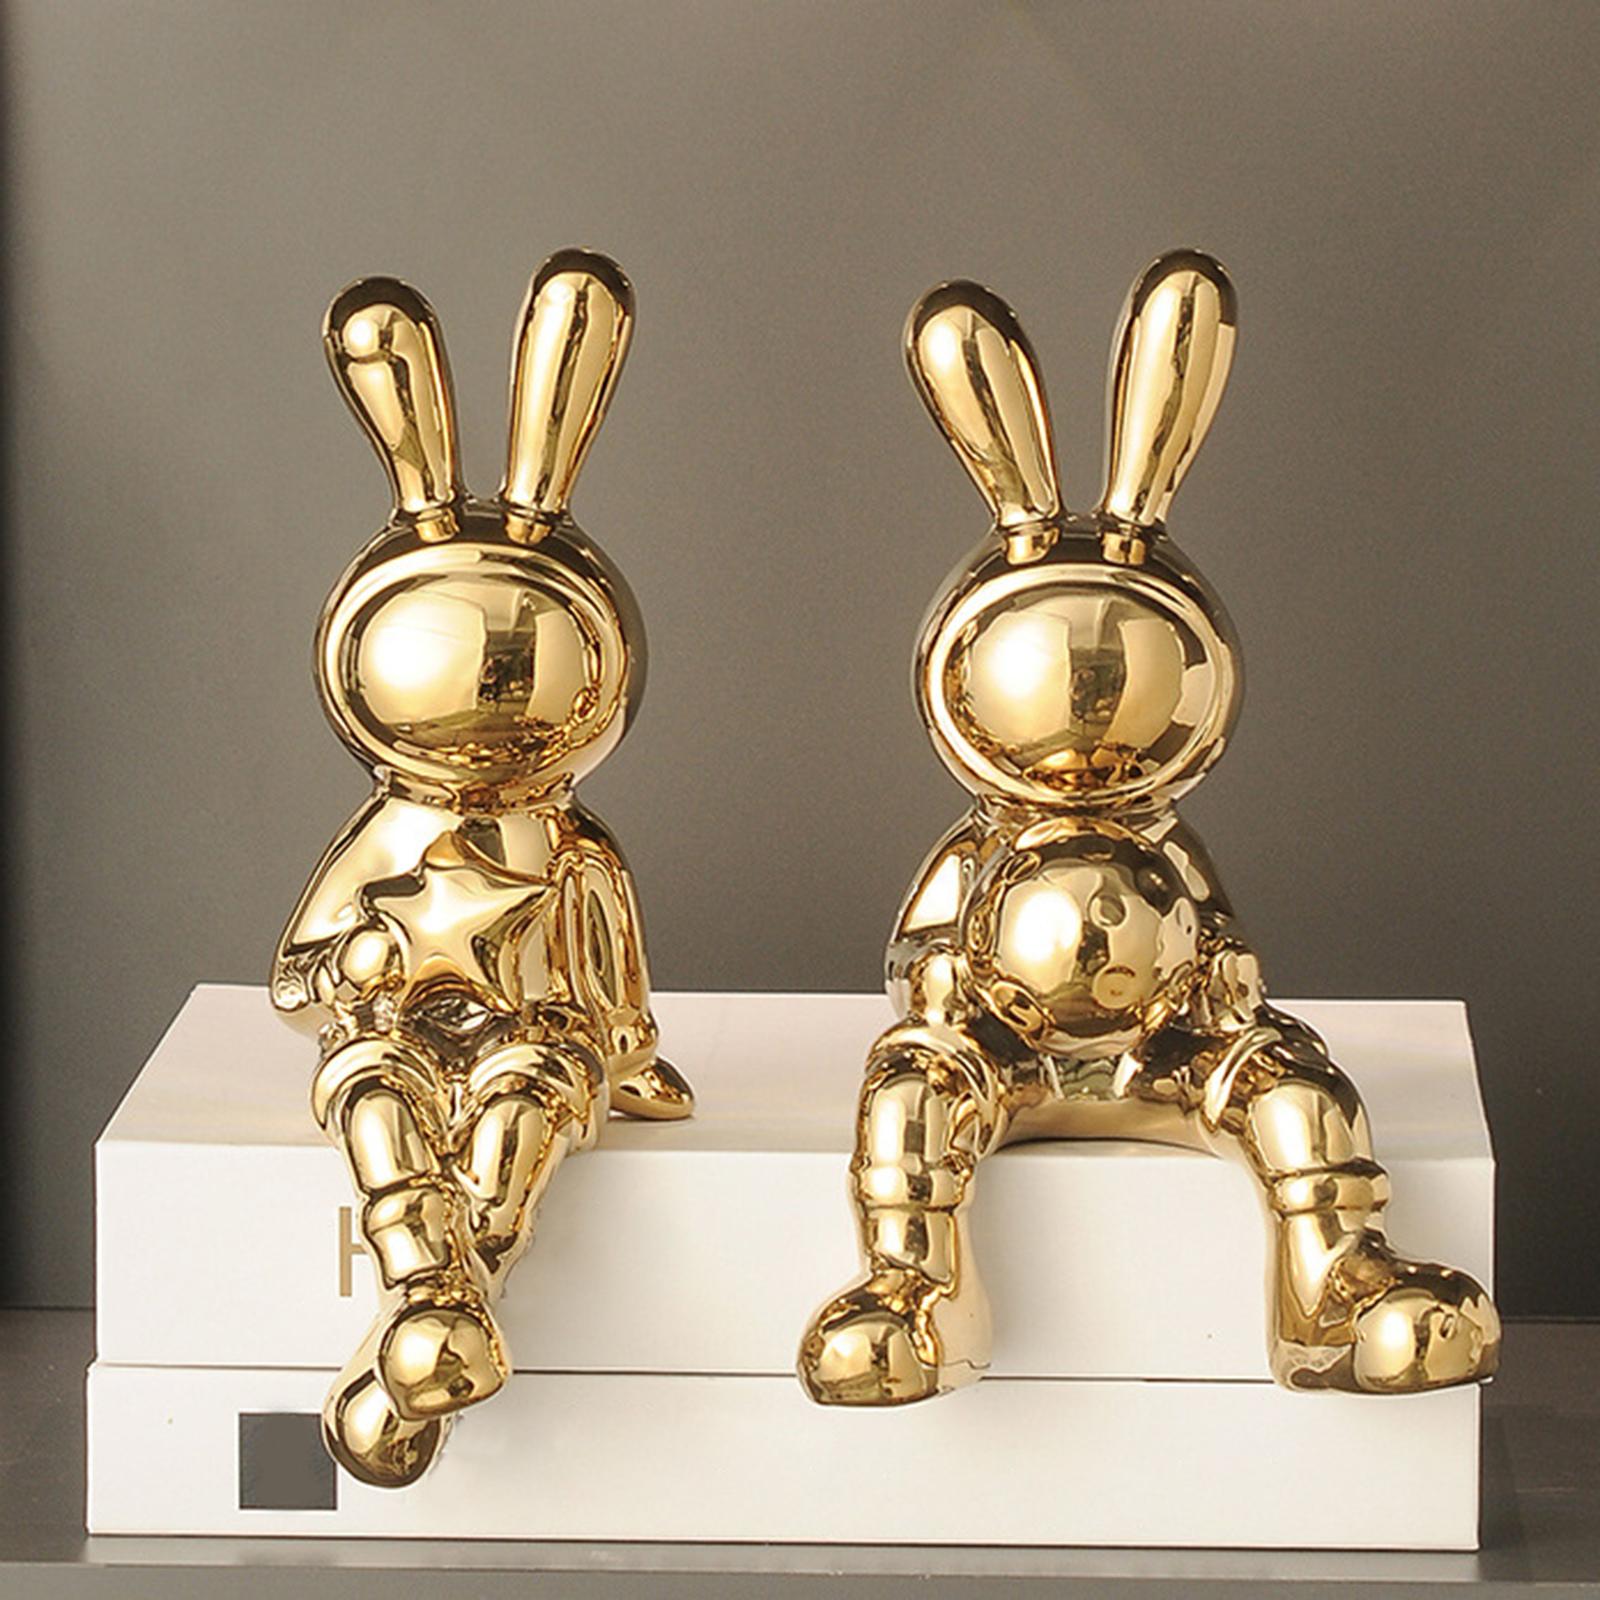 Rabbit Statues Animal Figures Display Birthday Gift Desktop Bunny Sculptures gold